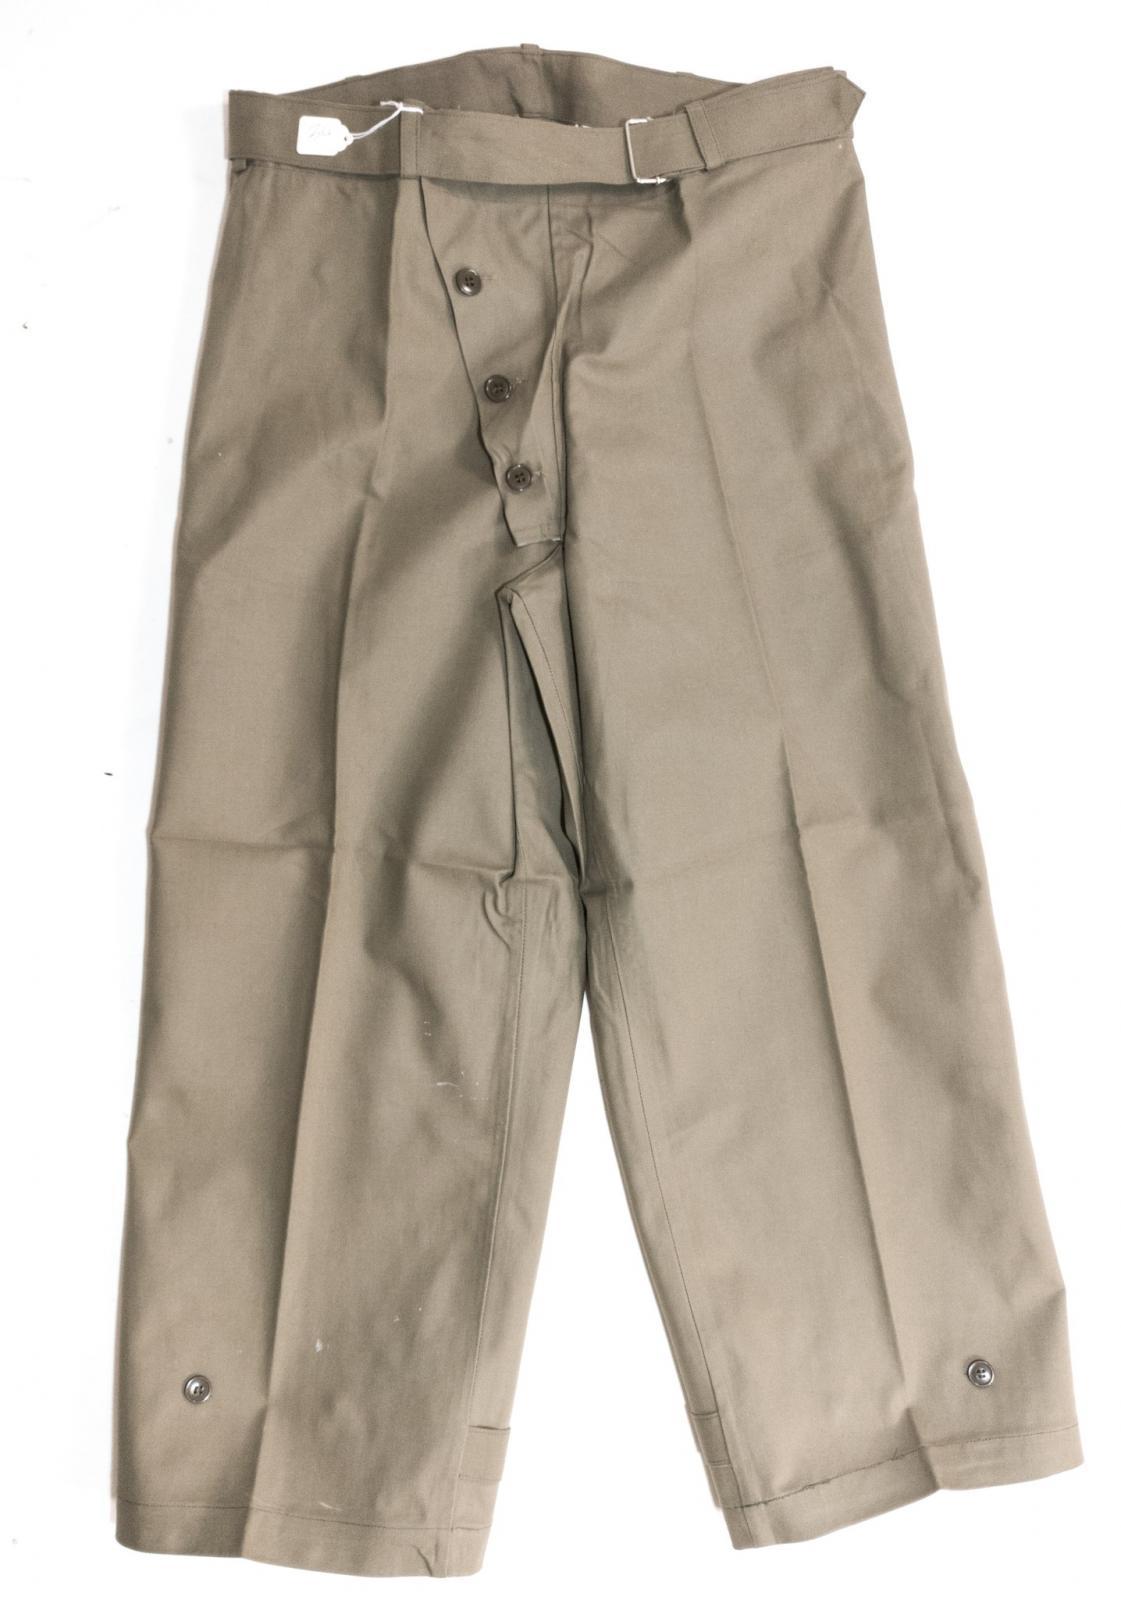 Vintage Italian navy surplus waterproof trousers - Surplus & Lost